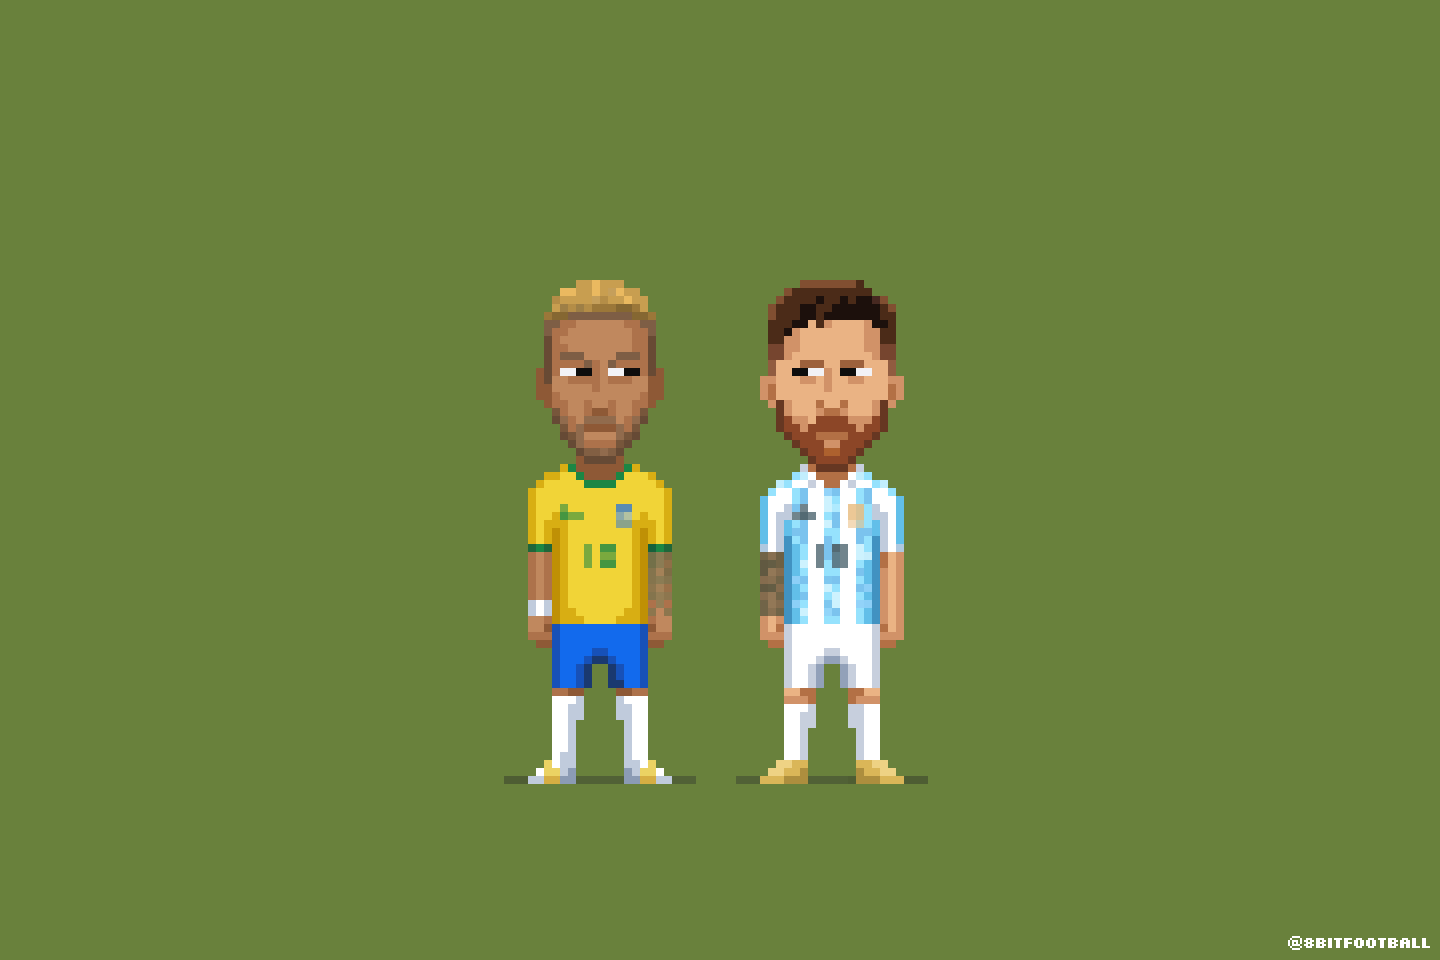 Brazil and Argentina in Copa America 2021 Final